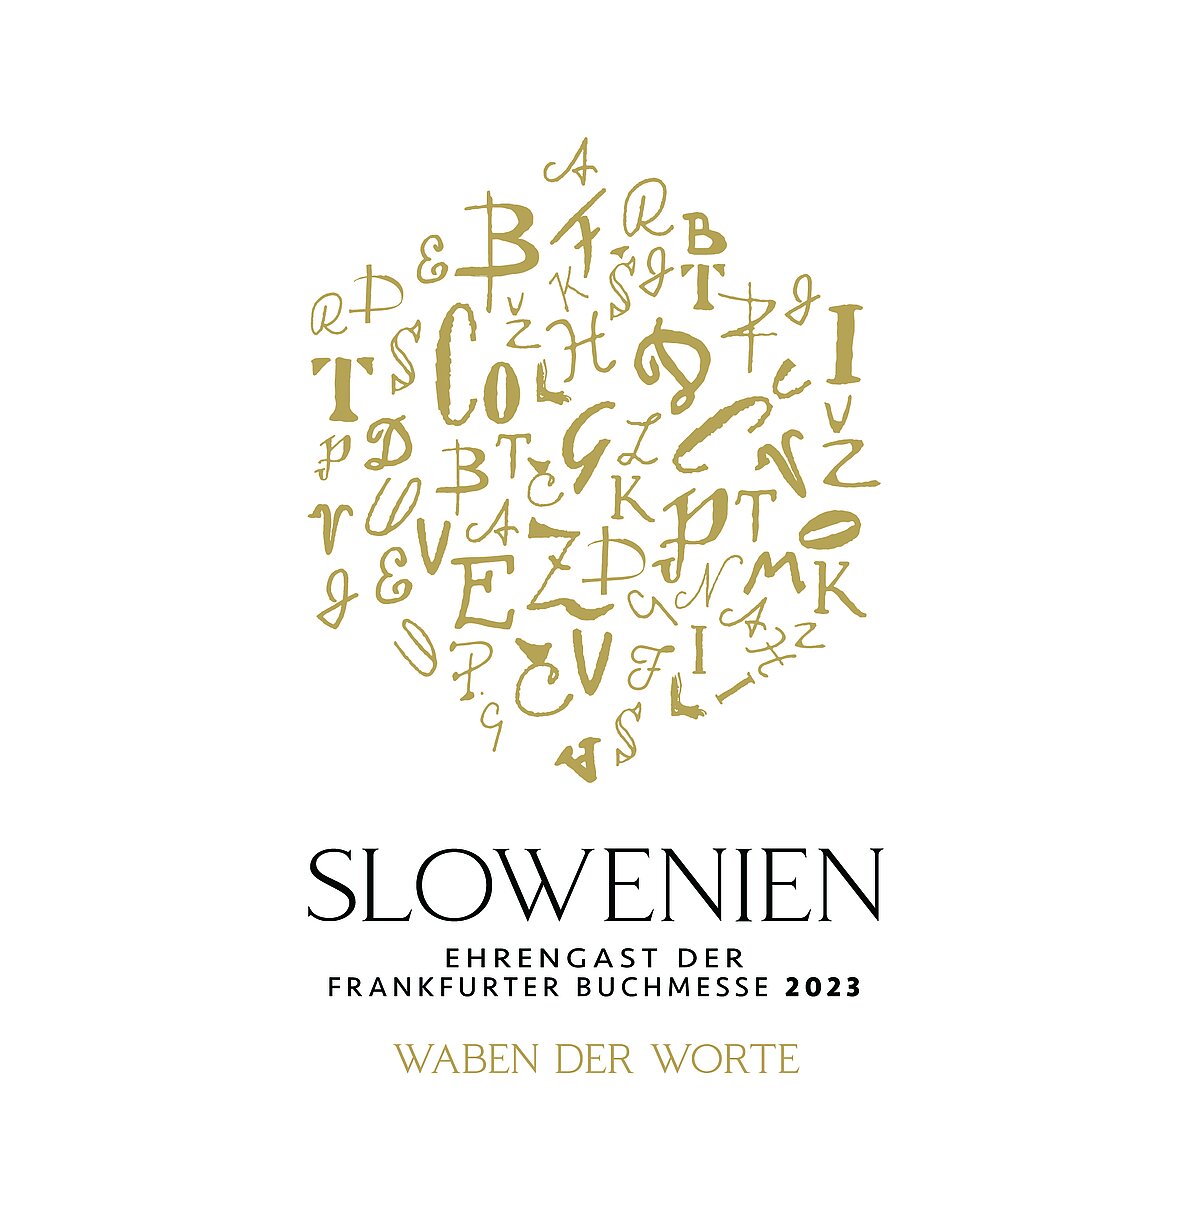 Das Logo des Ehrengast-Auftritts von Slowenien zur Frankfurter Buchmesse 2023.